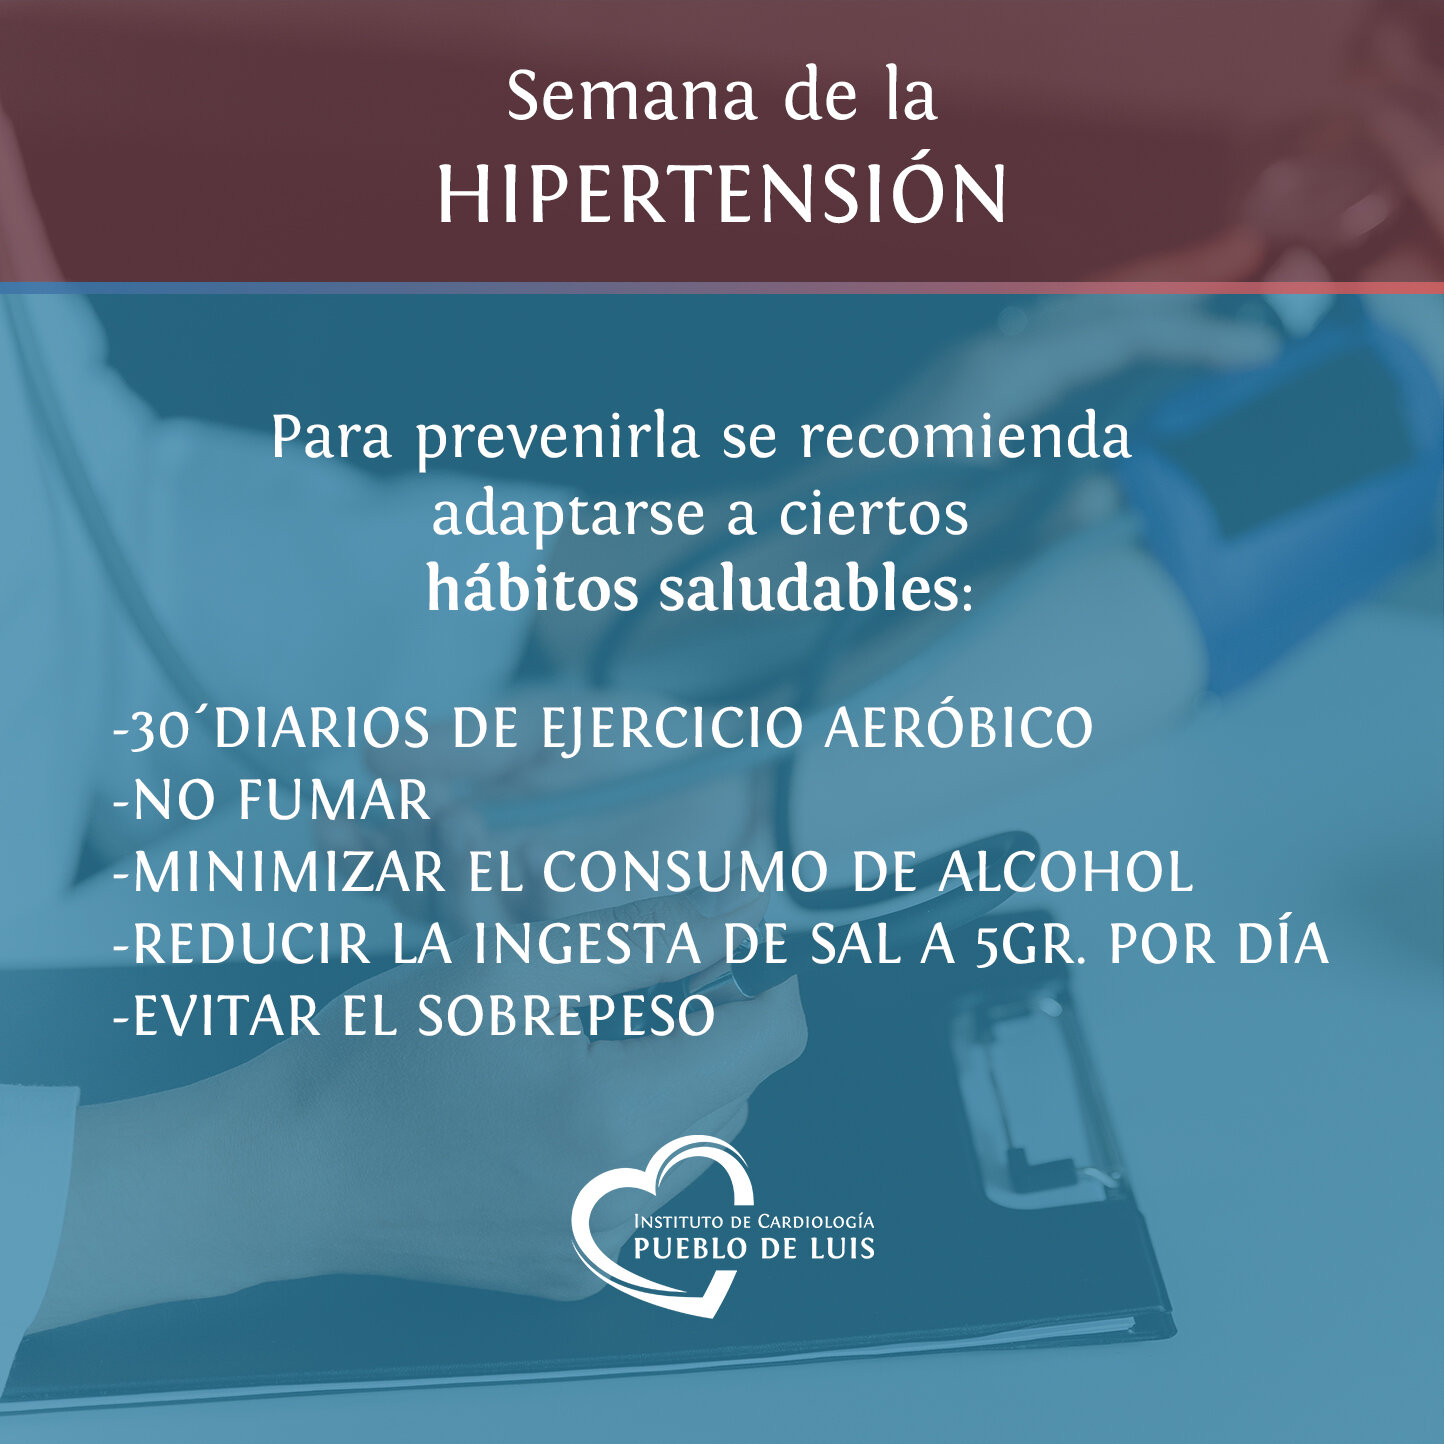 placa Hipertension1.jpg